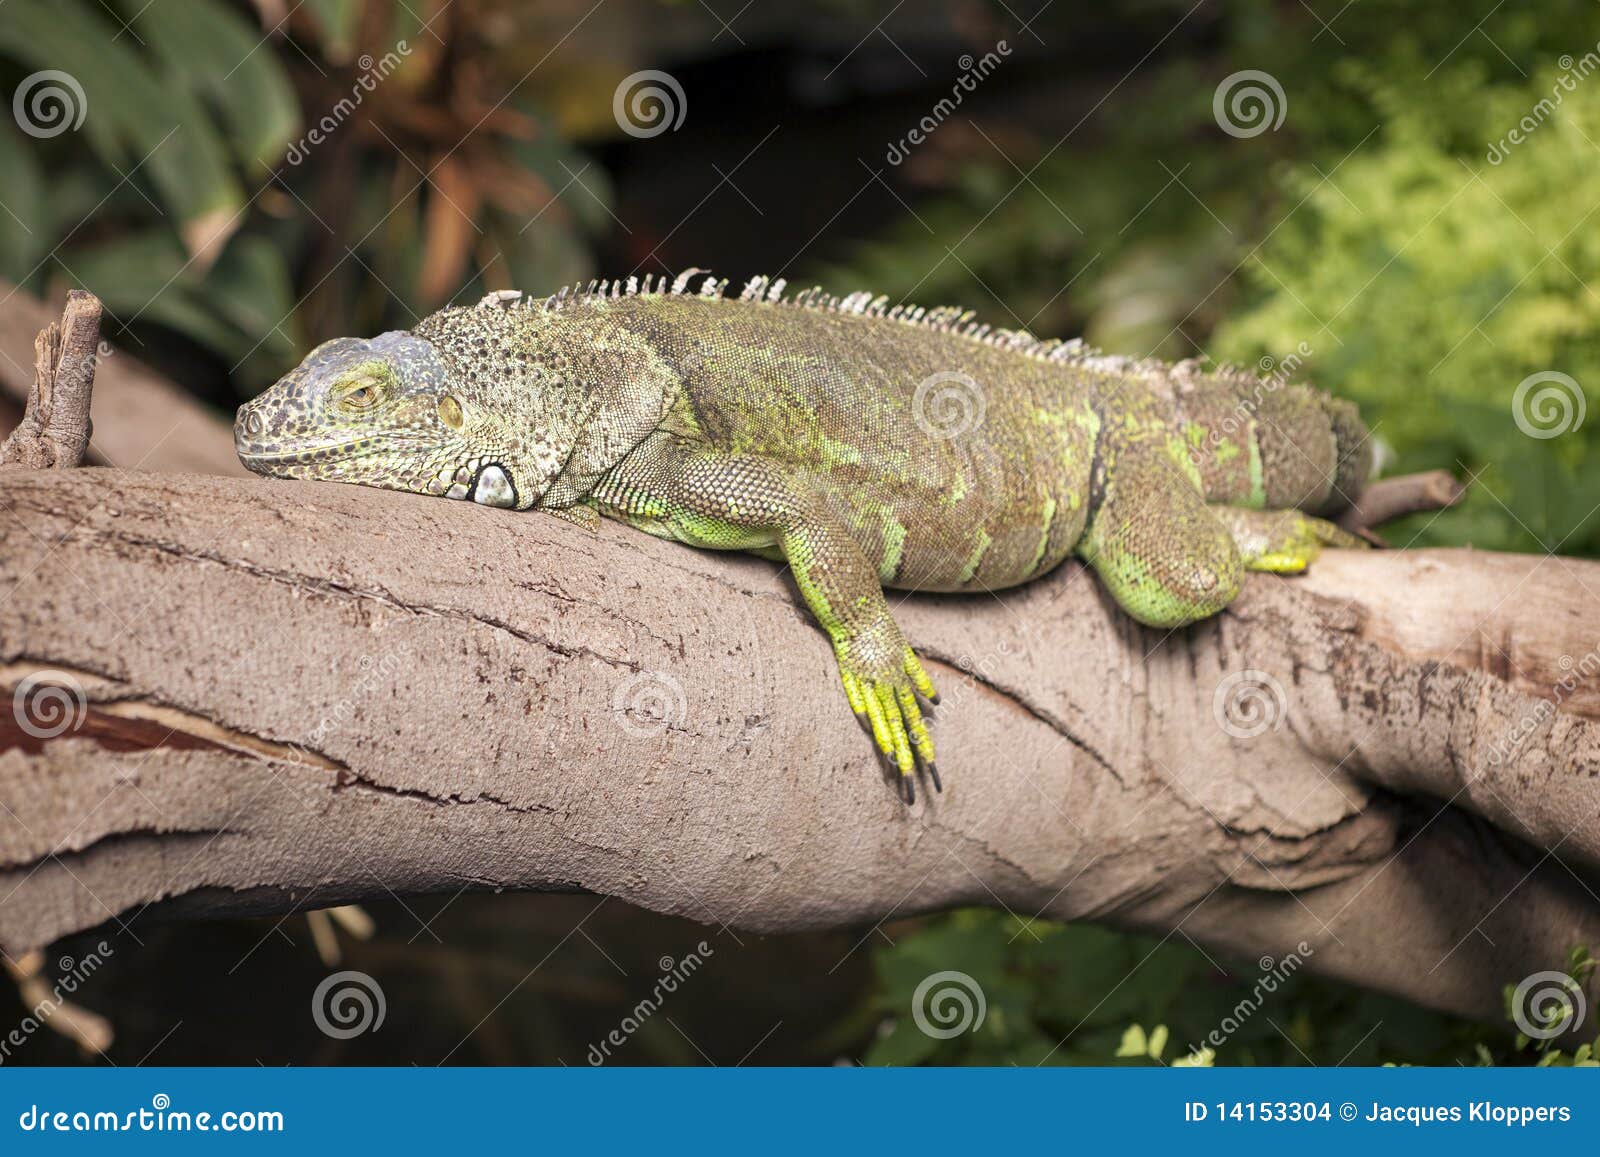 iguana y el perezoso